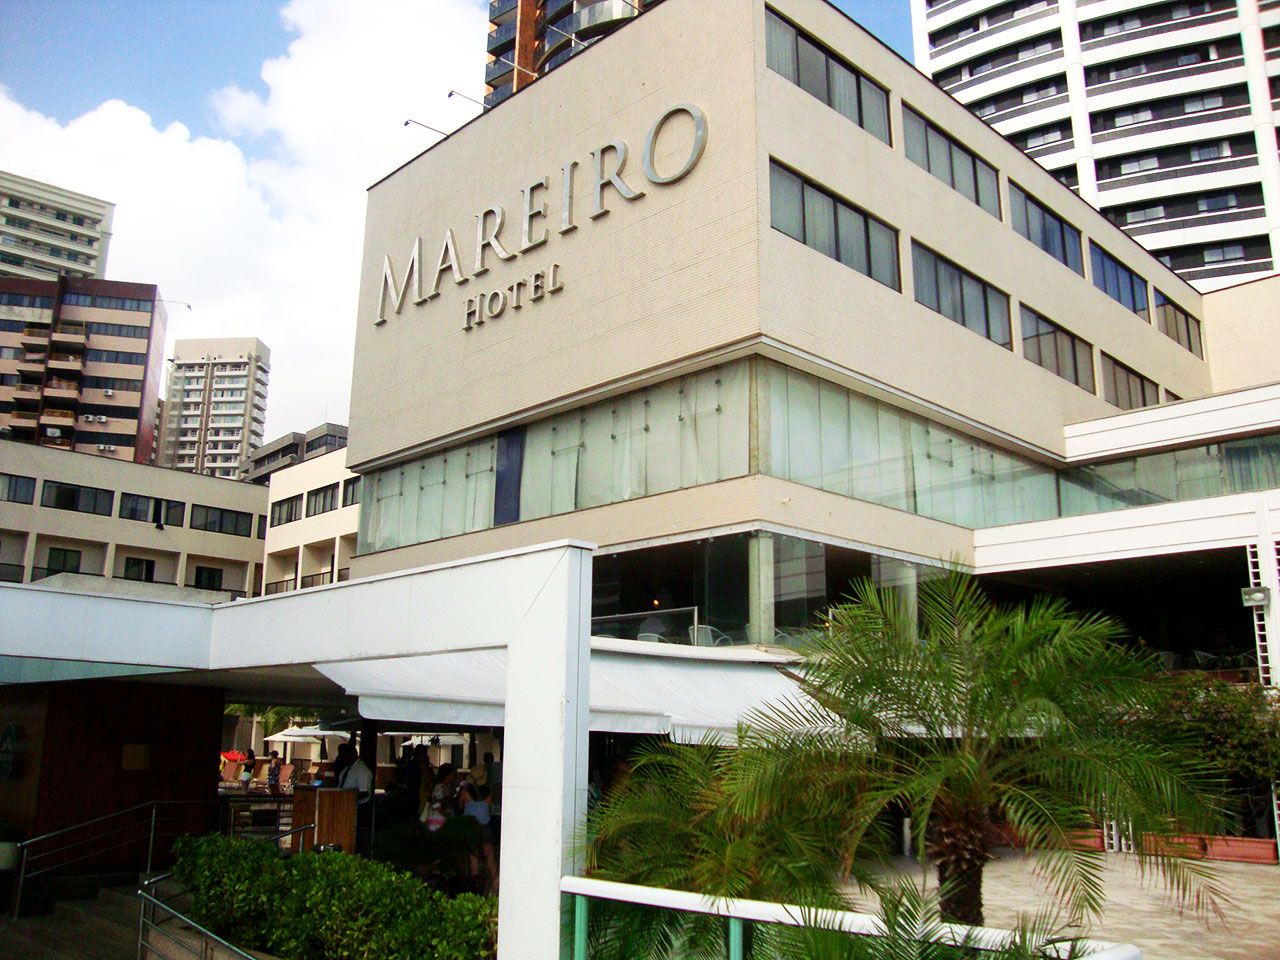 Mareiro Hotel - Fortaleza - CE